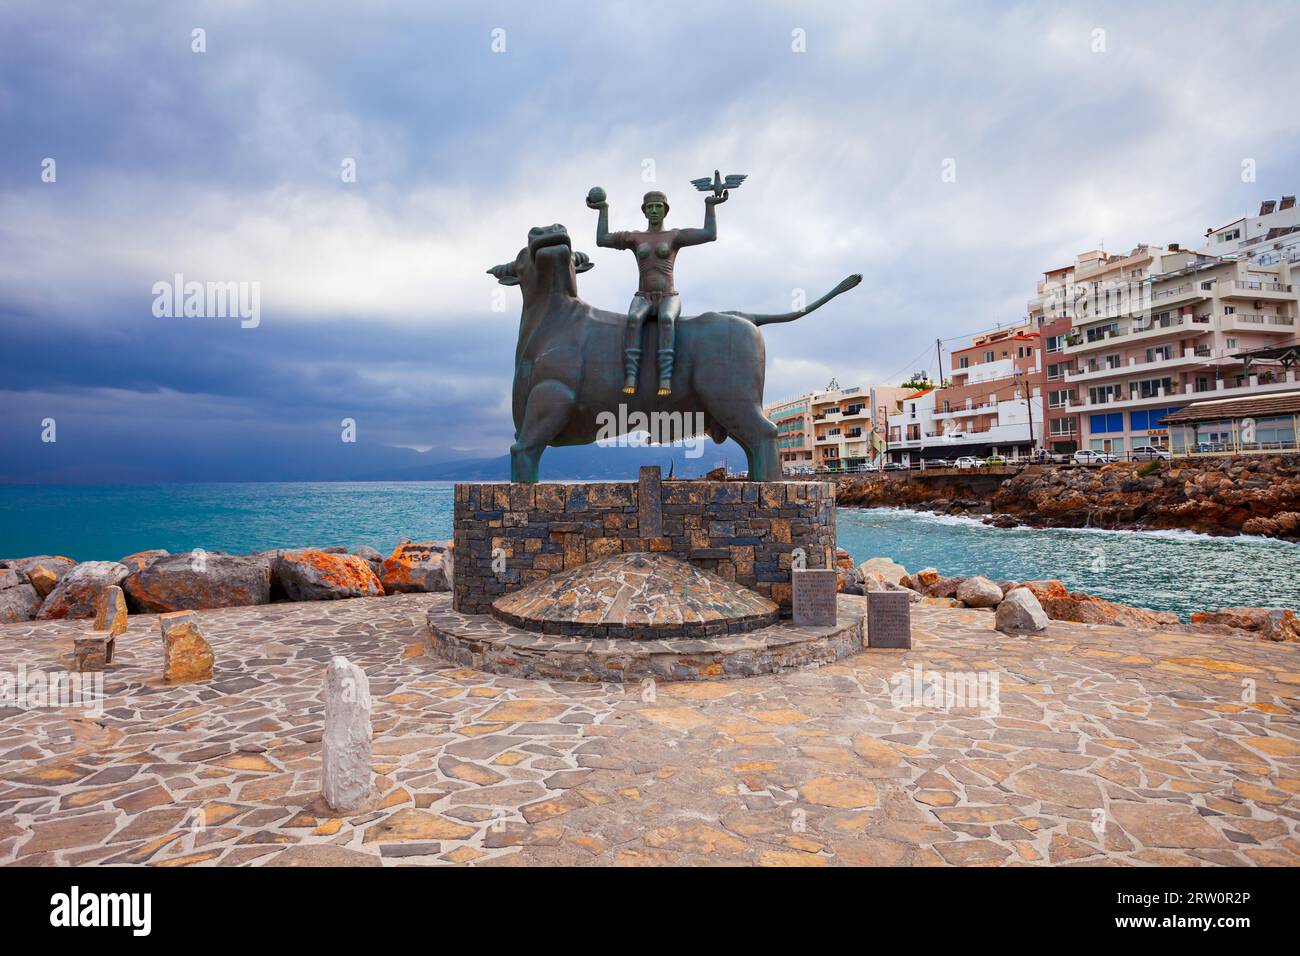 Agios Nikolaos, Grèce - 25 octobre 2021: L'enlèvement de l'Europe sculpture à Agios Nikolaos. Agios, Hagios ou Aghios Nikolas est une ville côtière sur t Banque D'Images